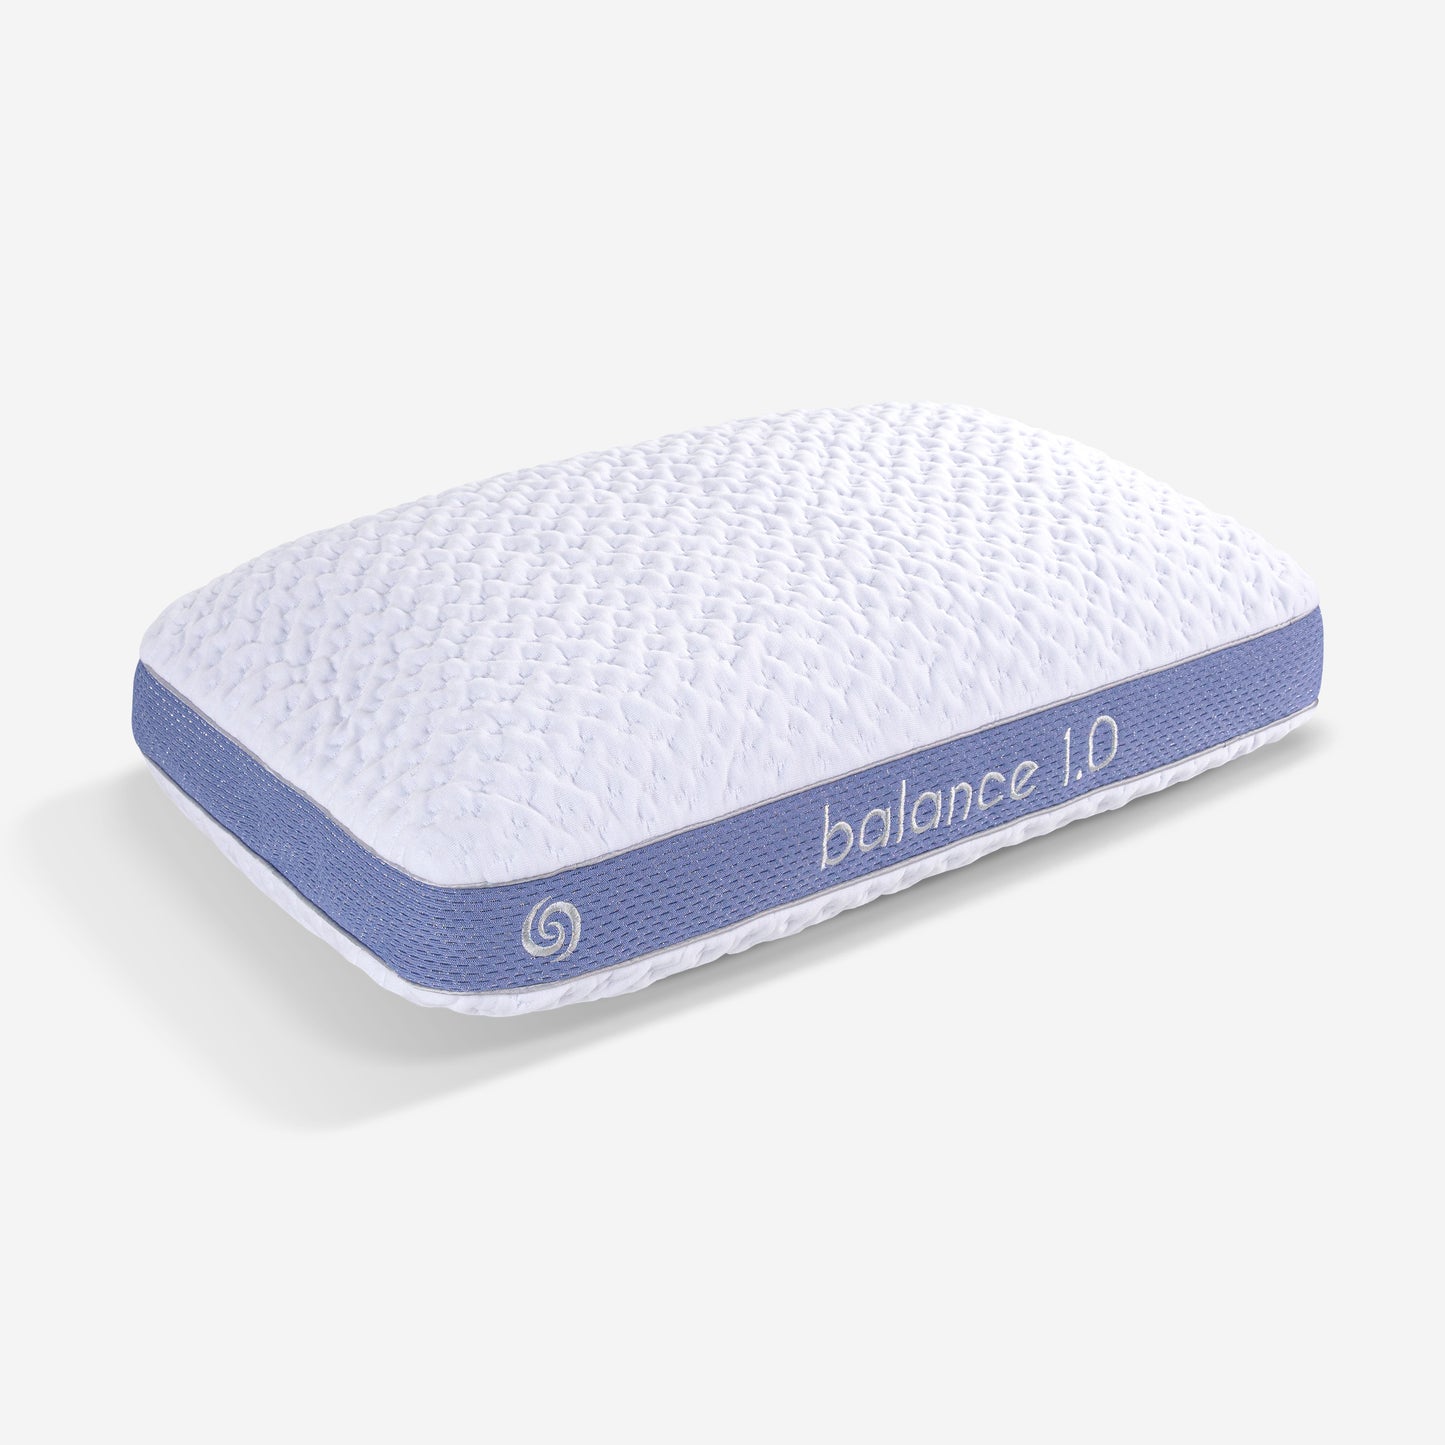 Bedgear Balance Performance Pillow 1.0